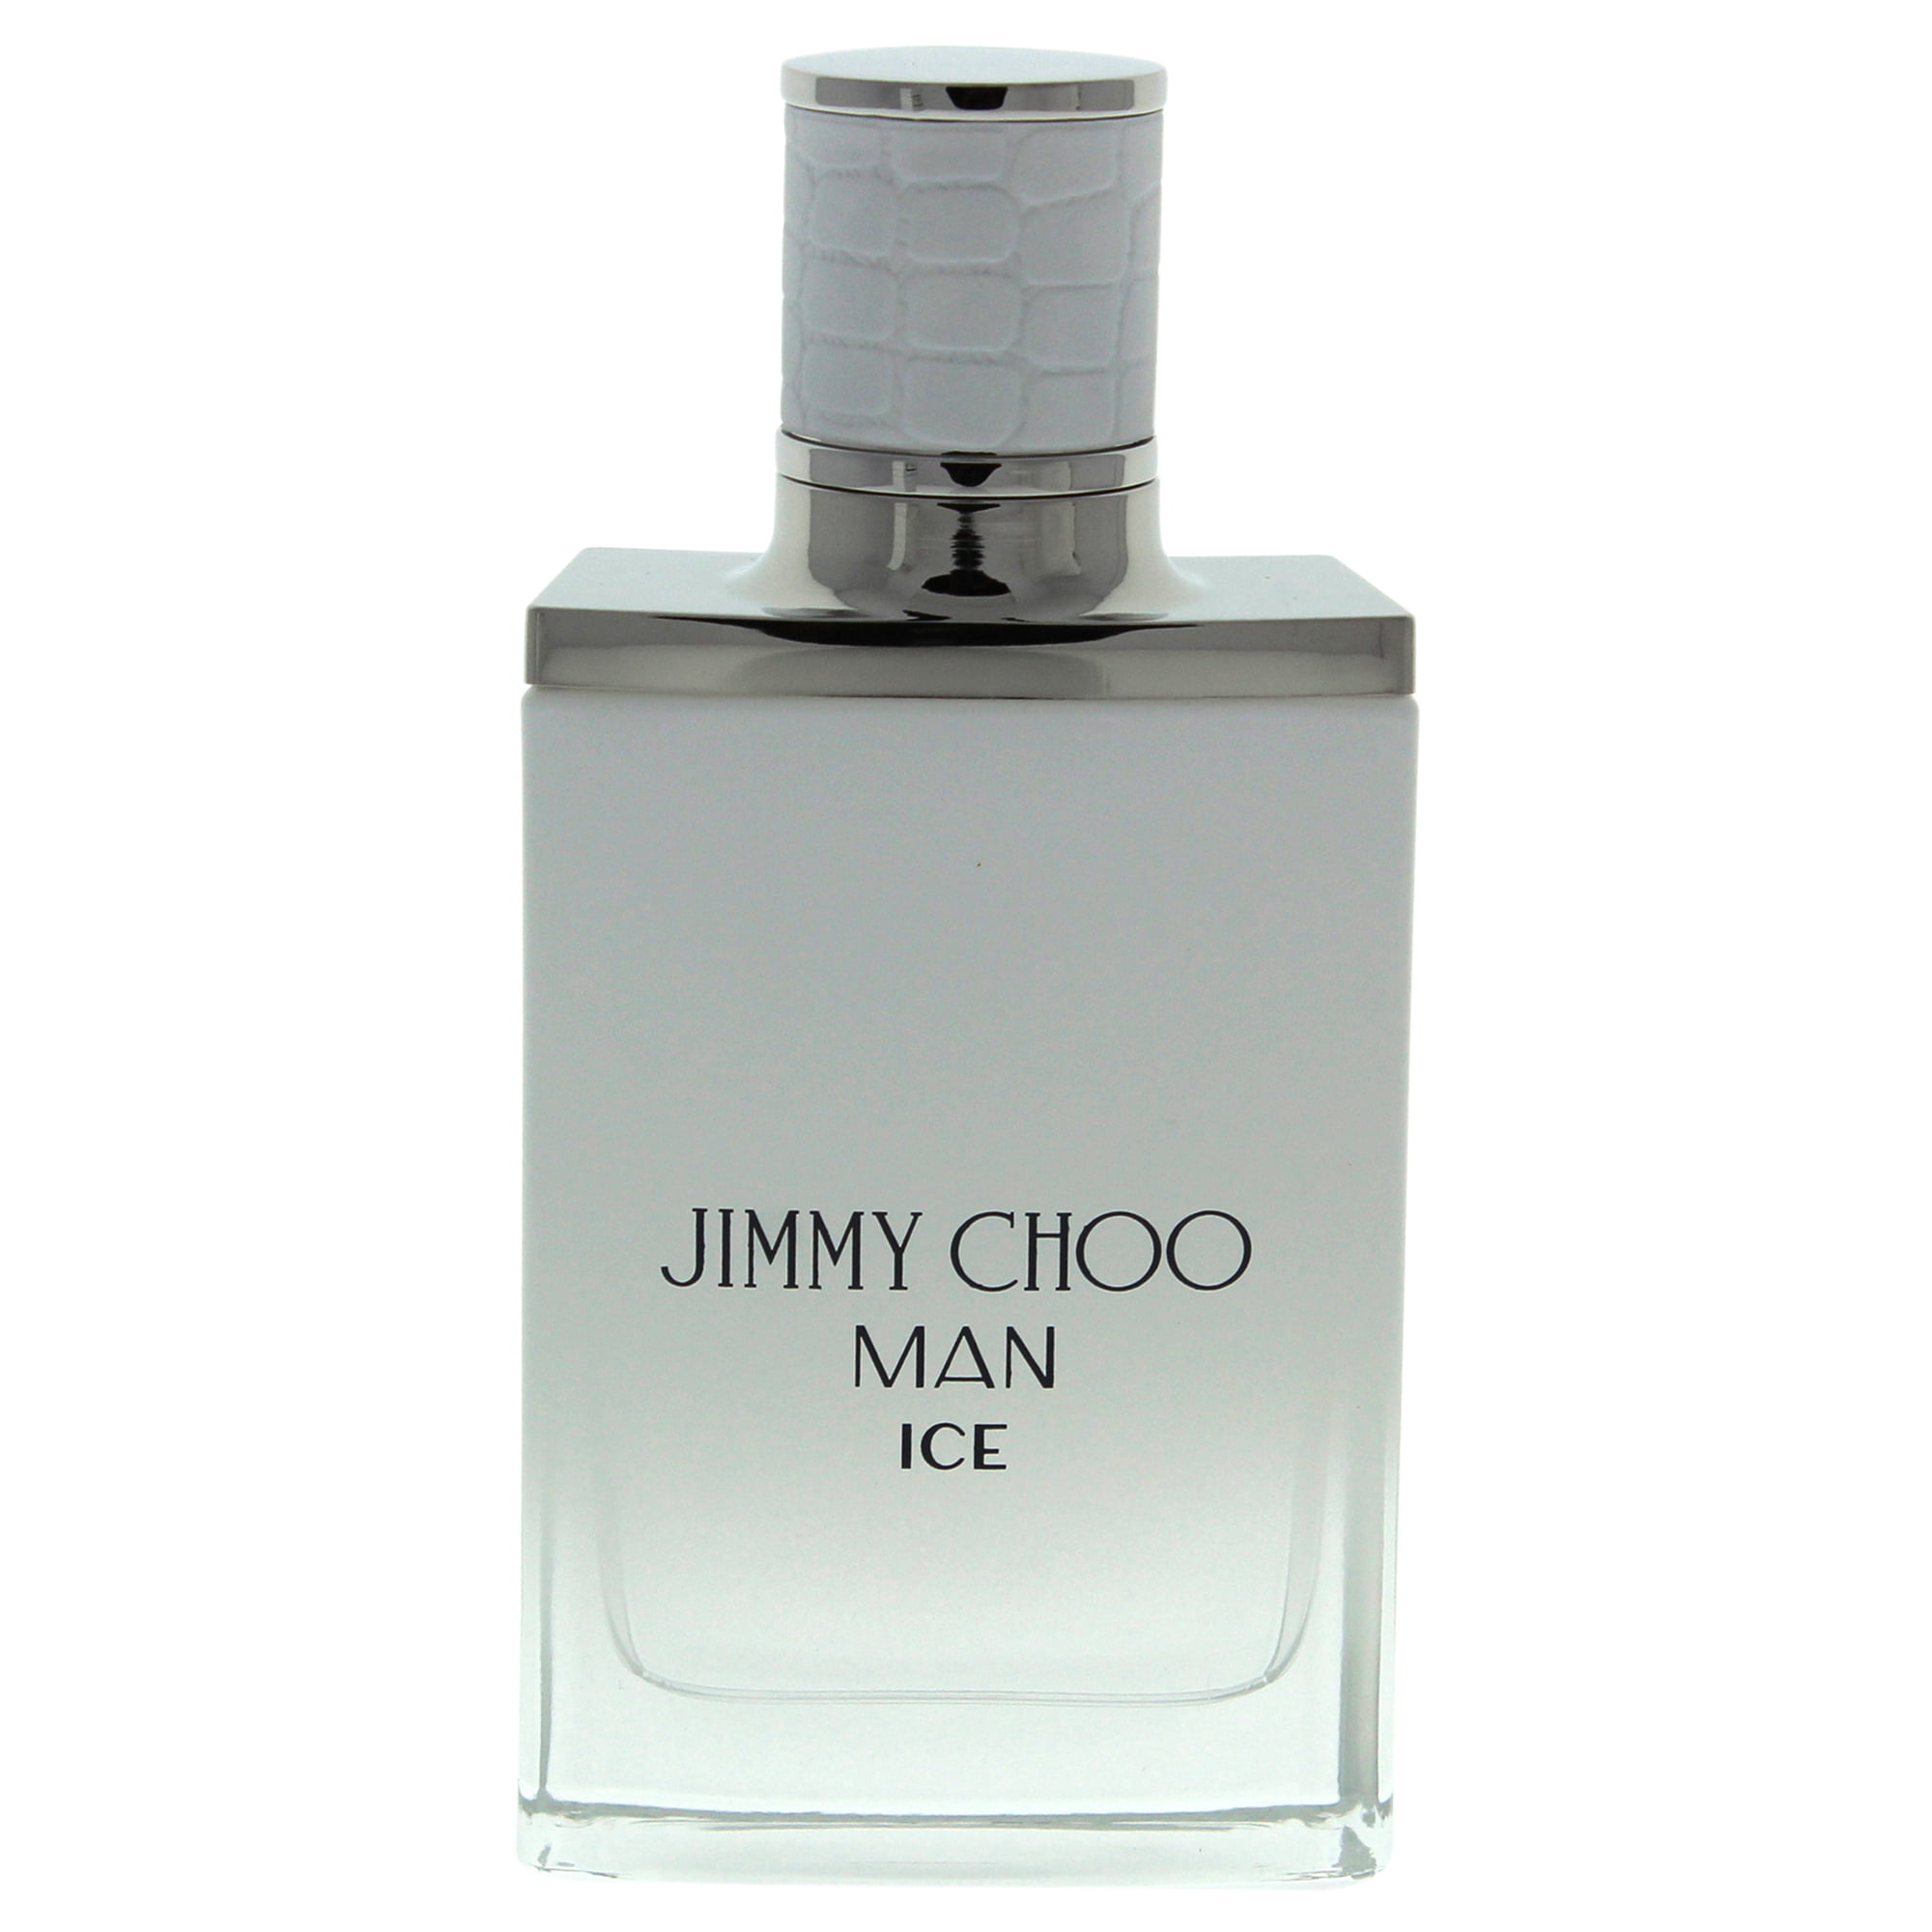 Джимми чу айс. Jimmy Choo man Ice. Jimmy Choo Voyager мужские. Джимми oz. Jimmy Choo man Aqua m EDT 50 ml [m].